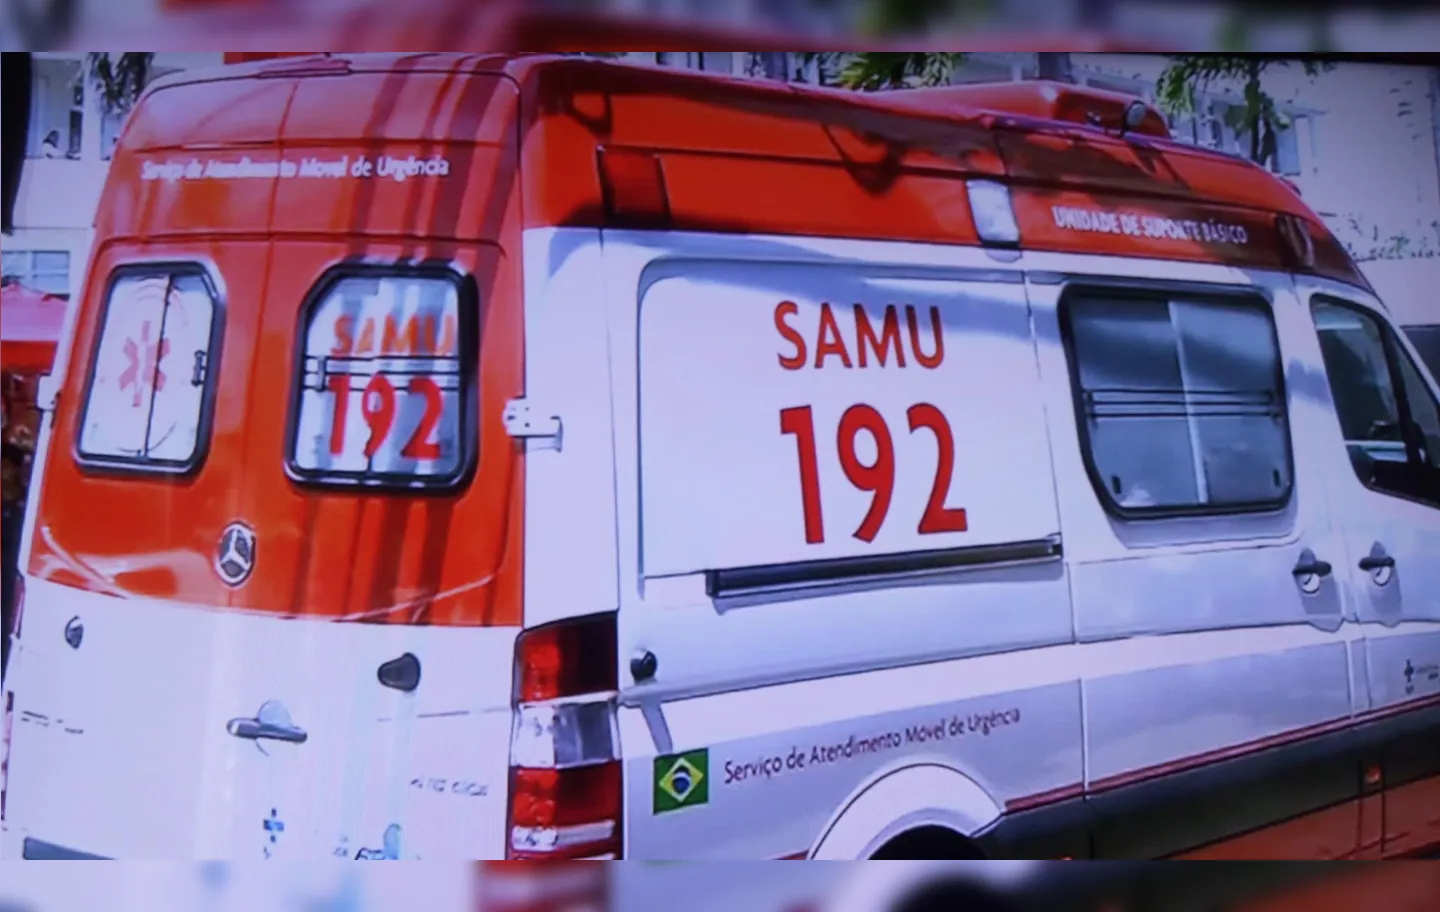 Samu está no local para socorrer a vítima | Foto: Reprodução | TV Record Bahia